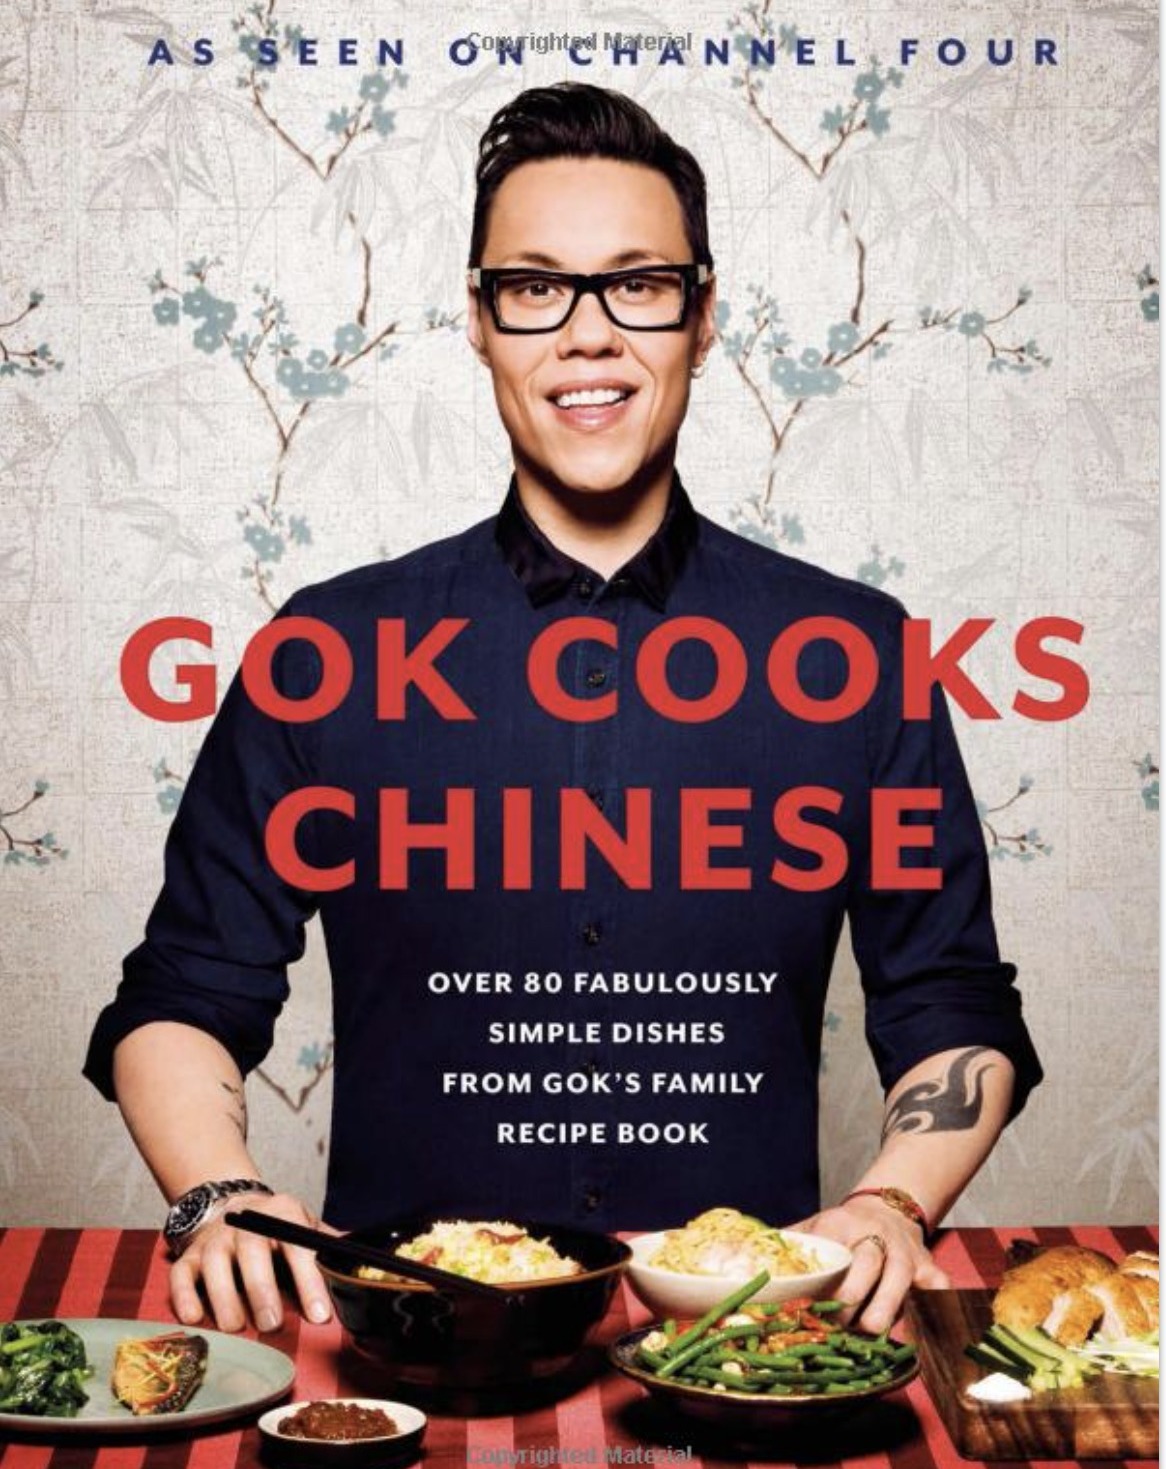 Gok cooks Chinese